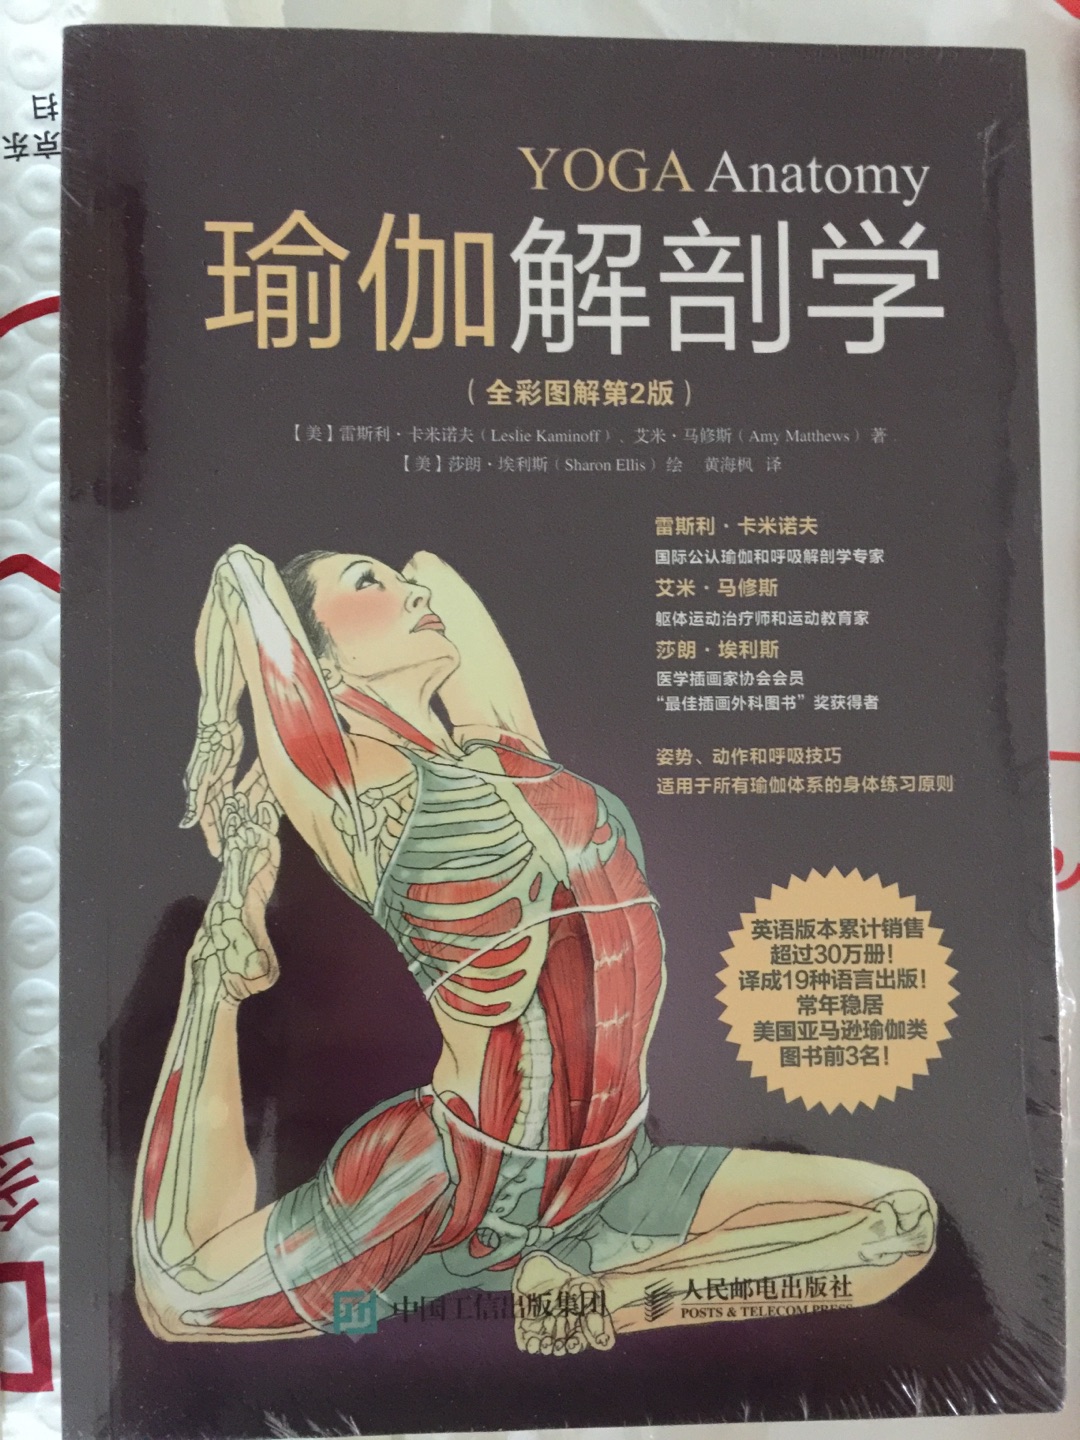 最近酷爱瑜伽，这本书可以准确的学习身体各部位的解剖学结构